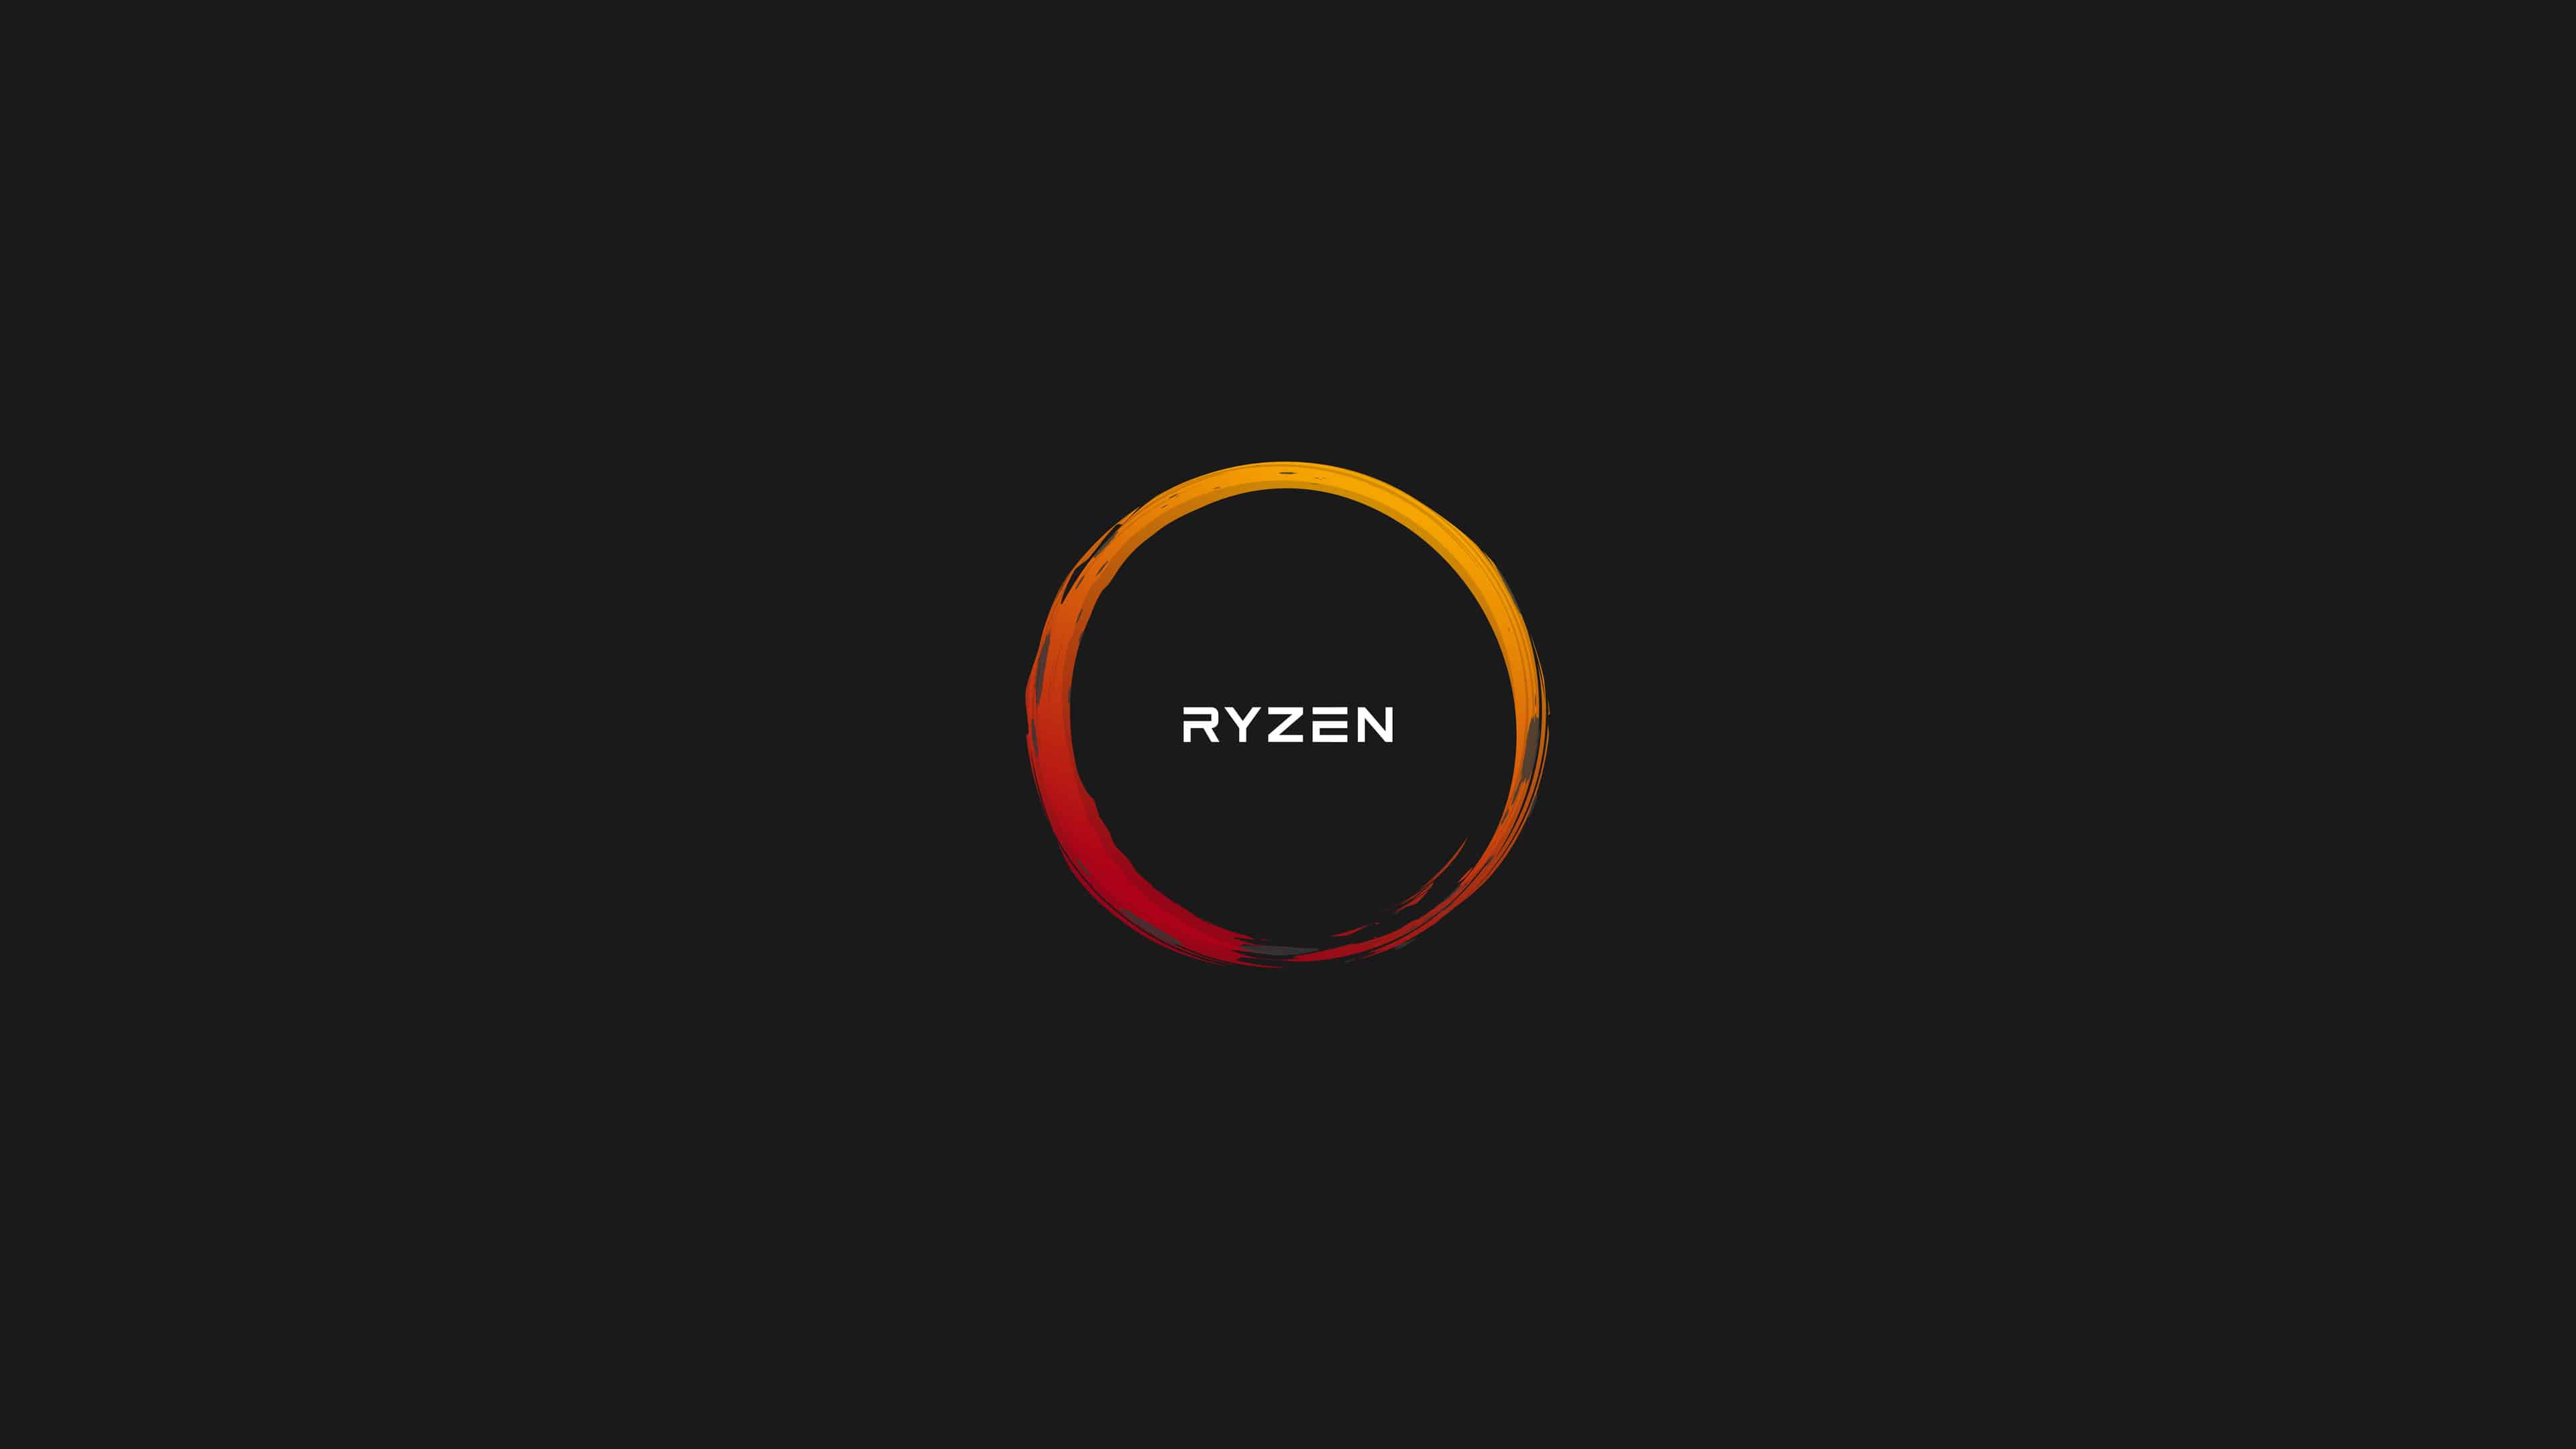 AMD Ryzen Logo - AMD Ryzen Logo UHD 4K Wallpaper | Pixelz